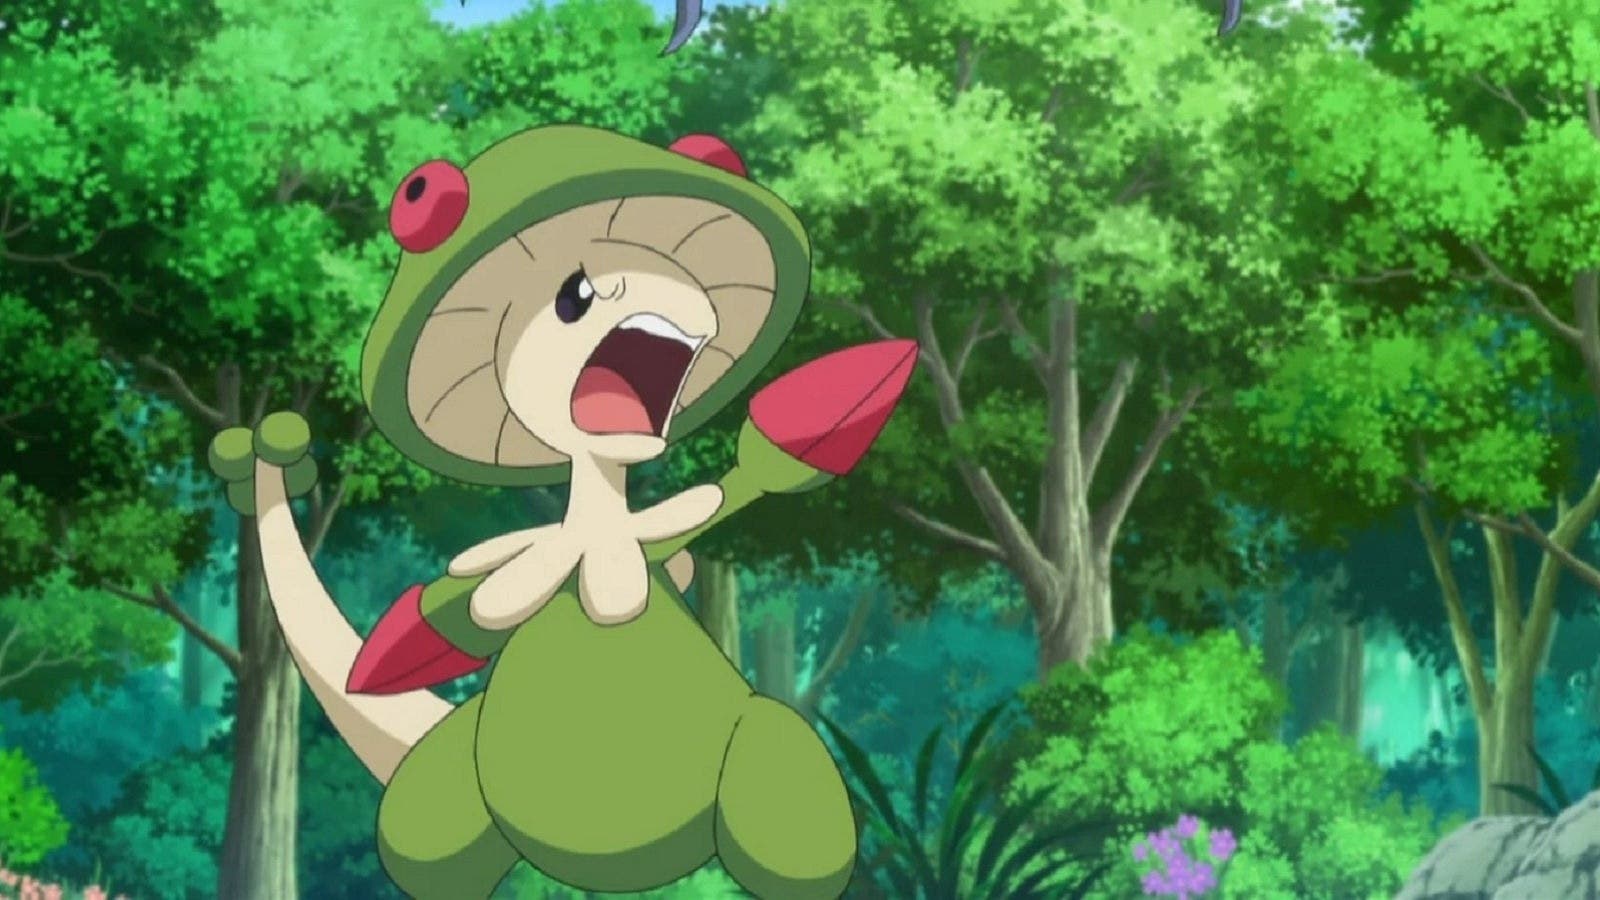 Fan-art de Pokémon imagina cómo podría verse la fusión entre Breelom y Quagsire